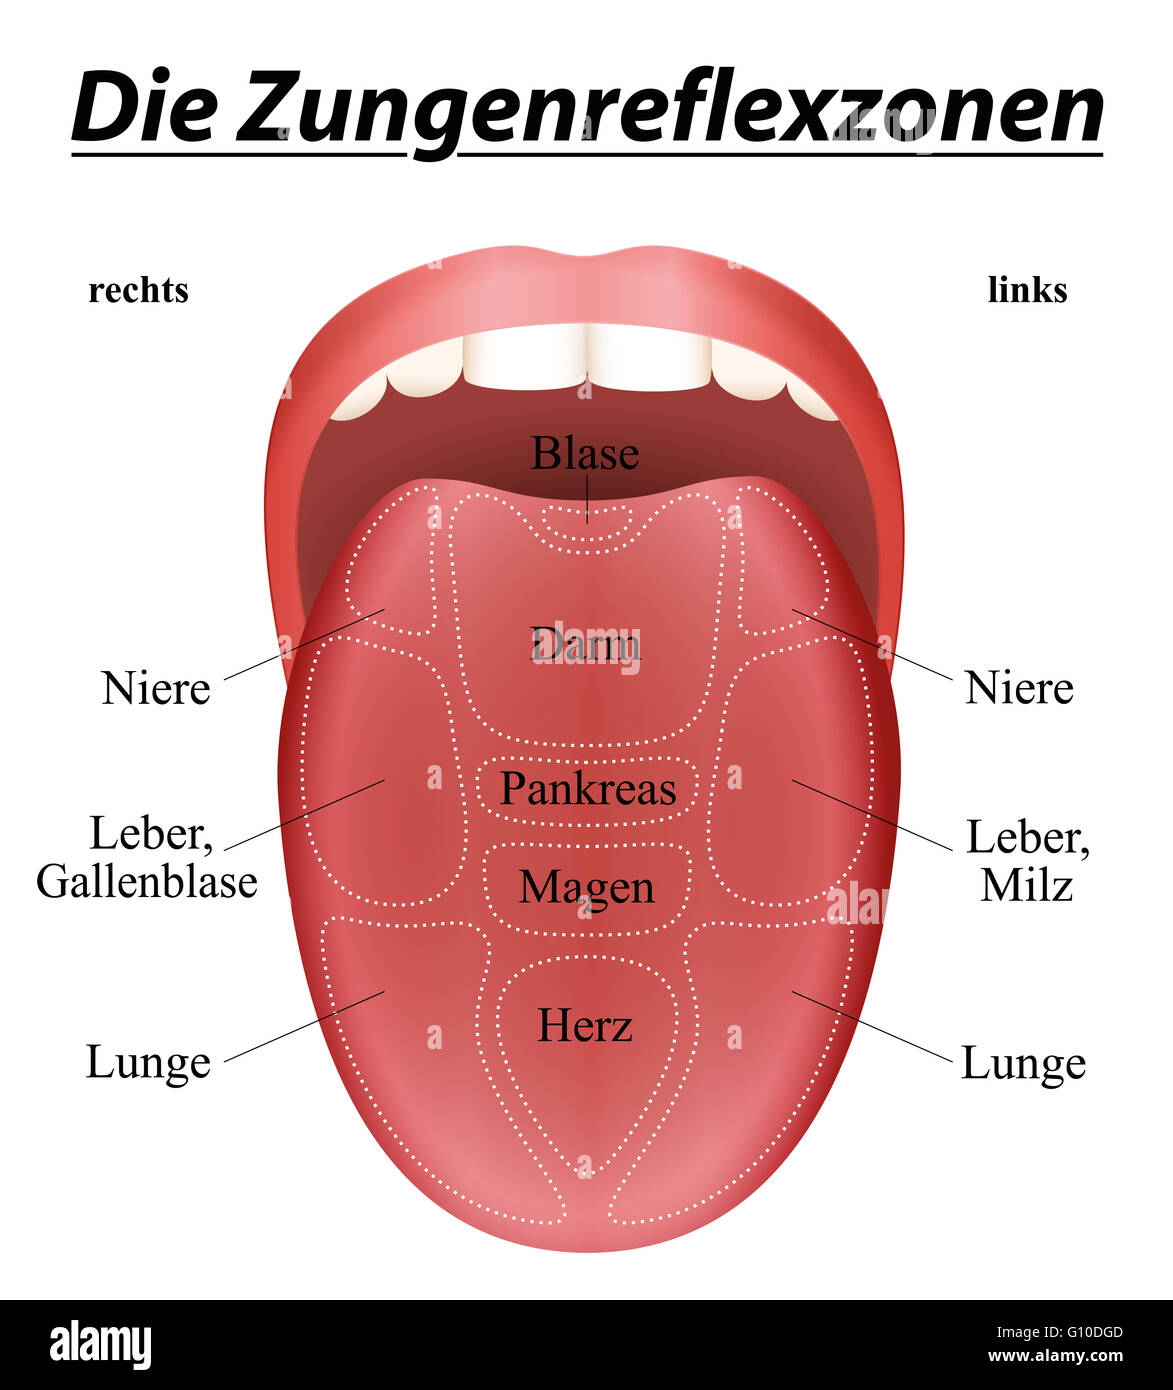 Tongue Auf Deutsch